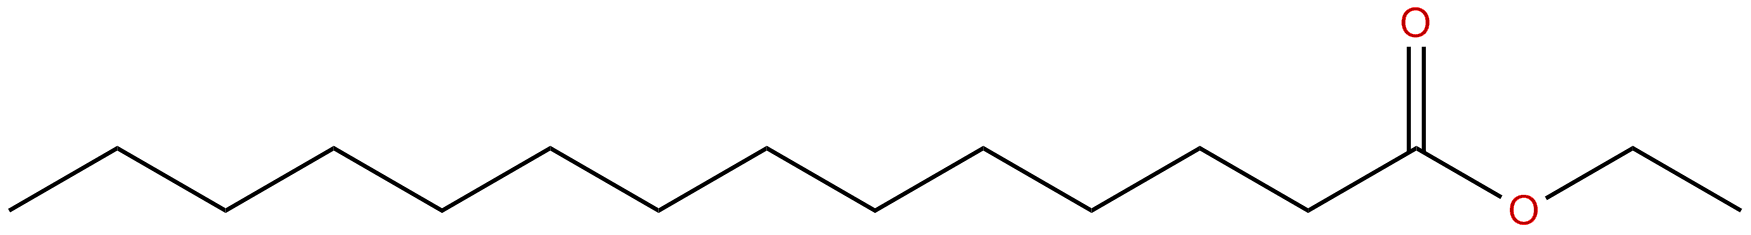 Image of ethyl tetradecanoate